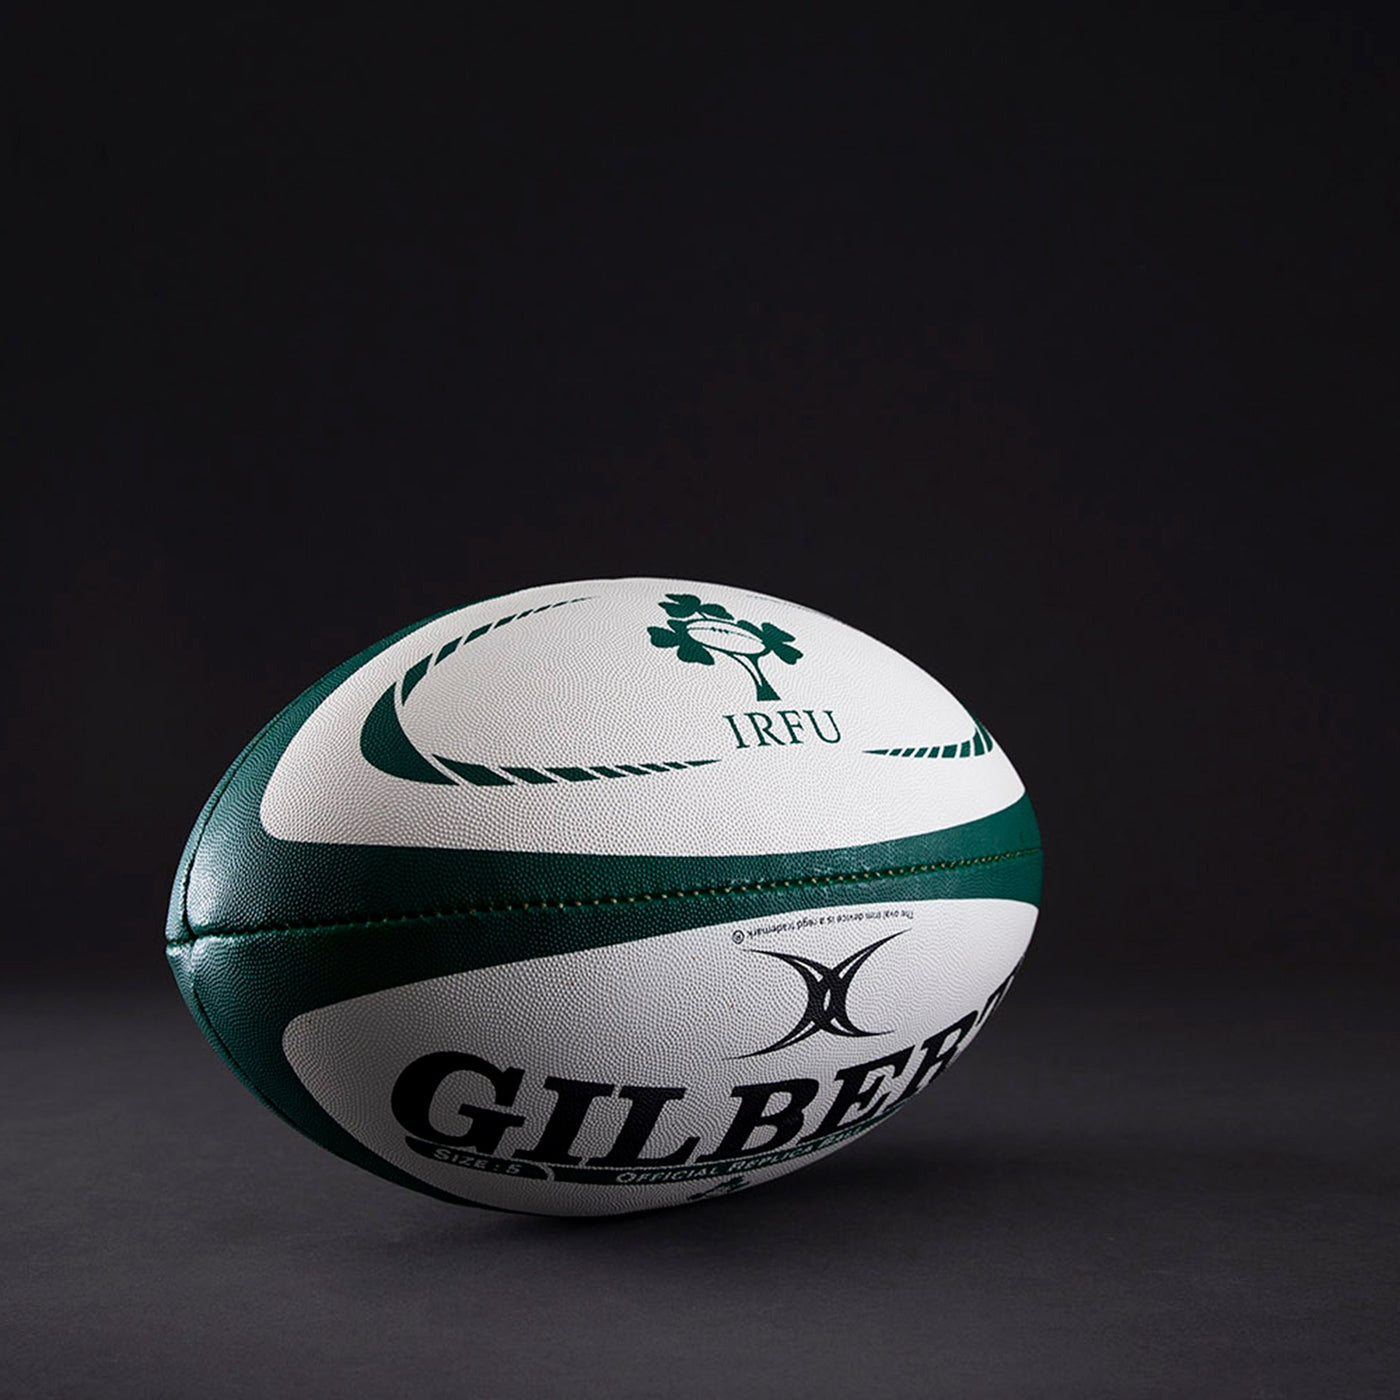 Ballon de Rugby Réplique Irlande Taille 4